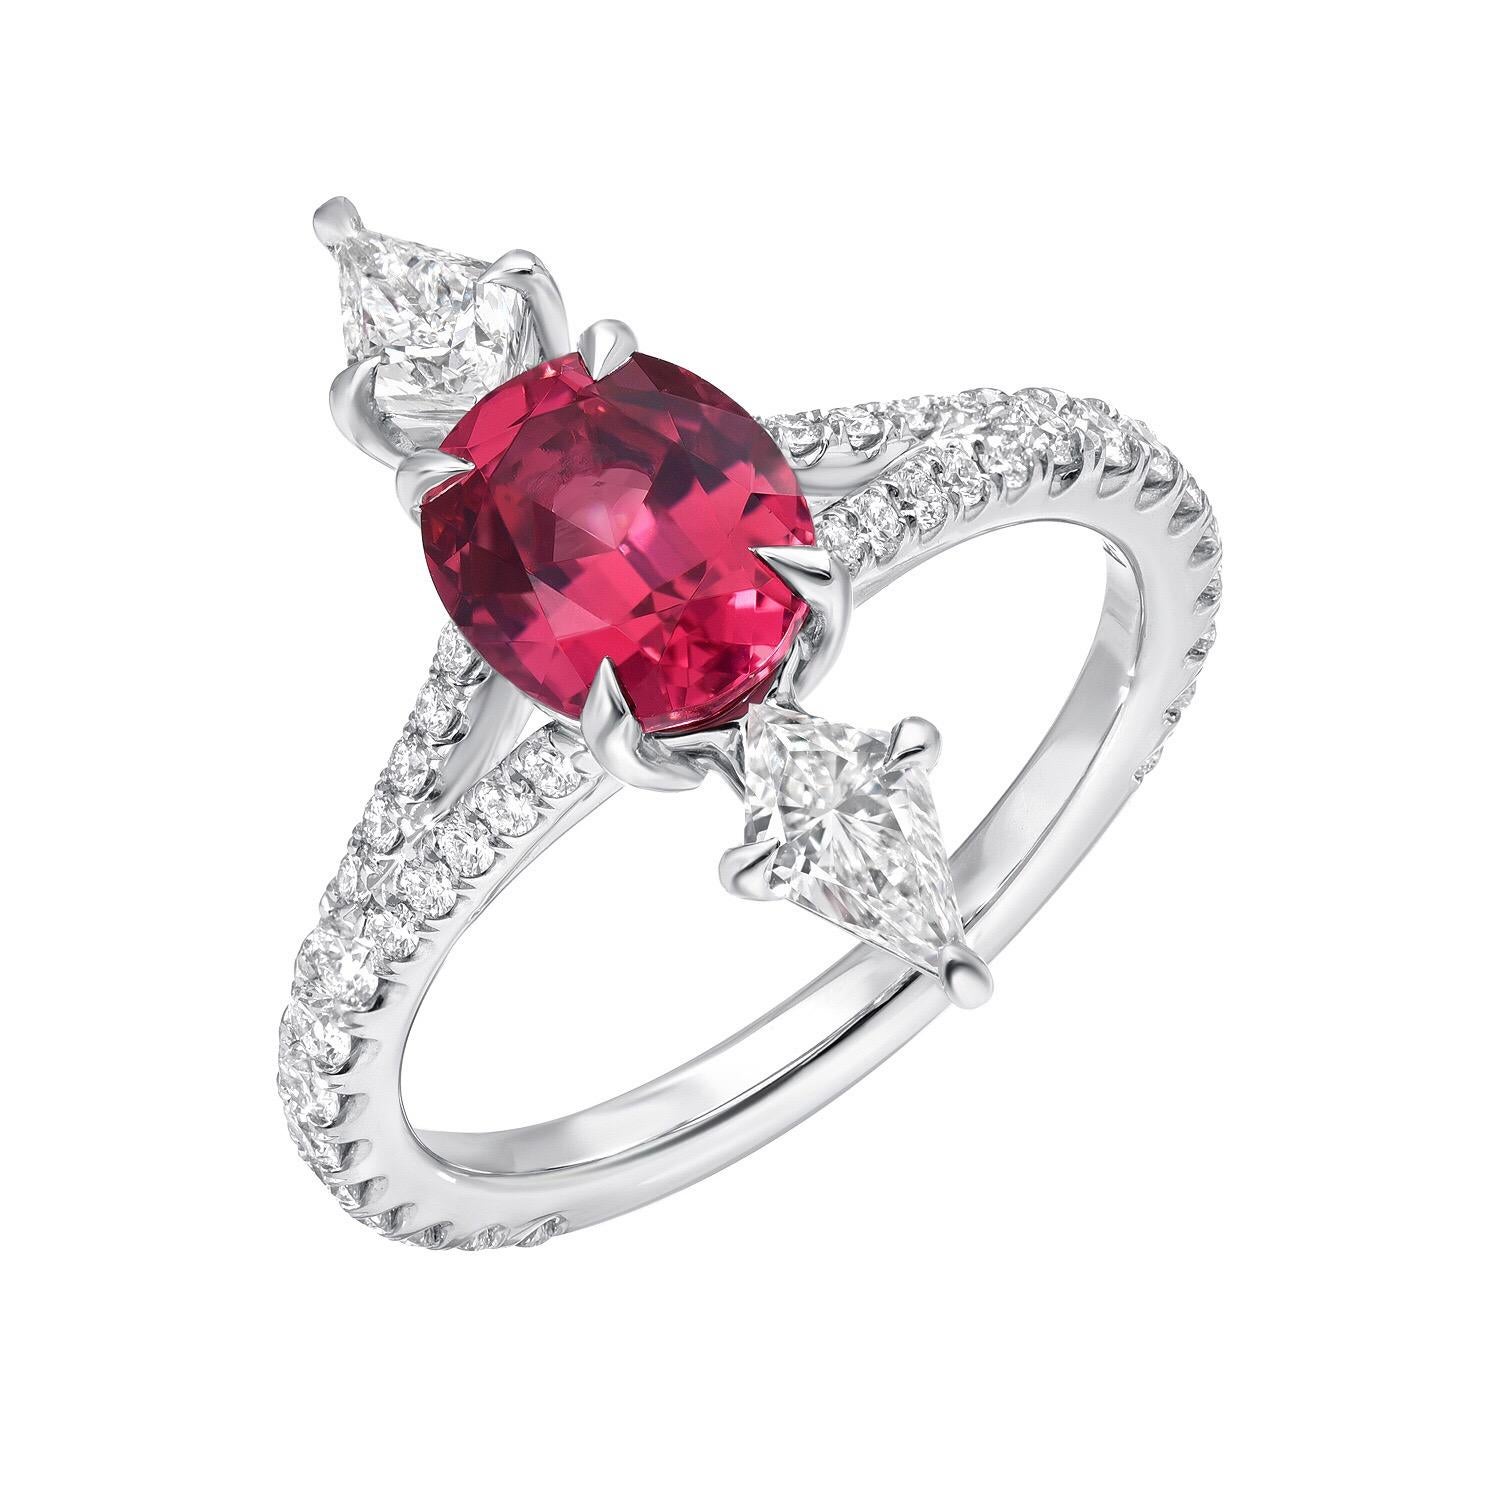 Un ovale de spinelle rose ultrafin, pesant au total 1,47 carats, est rejoint par une paire de diamants en forme de cerf-volant, E/VS1, pesant au total 0,48 carats, et orné d'un total de 0,50 carats de diamants ronds de taille brillant sur la tige,